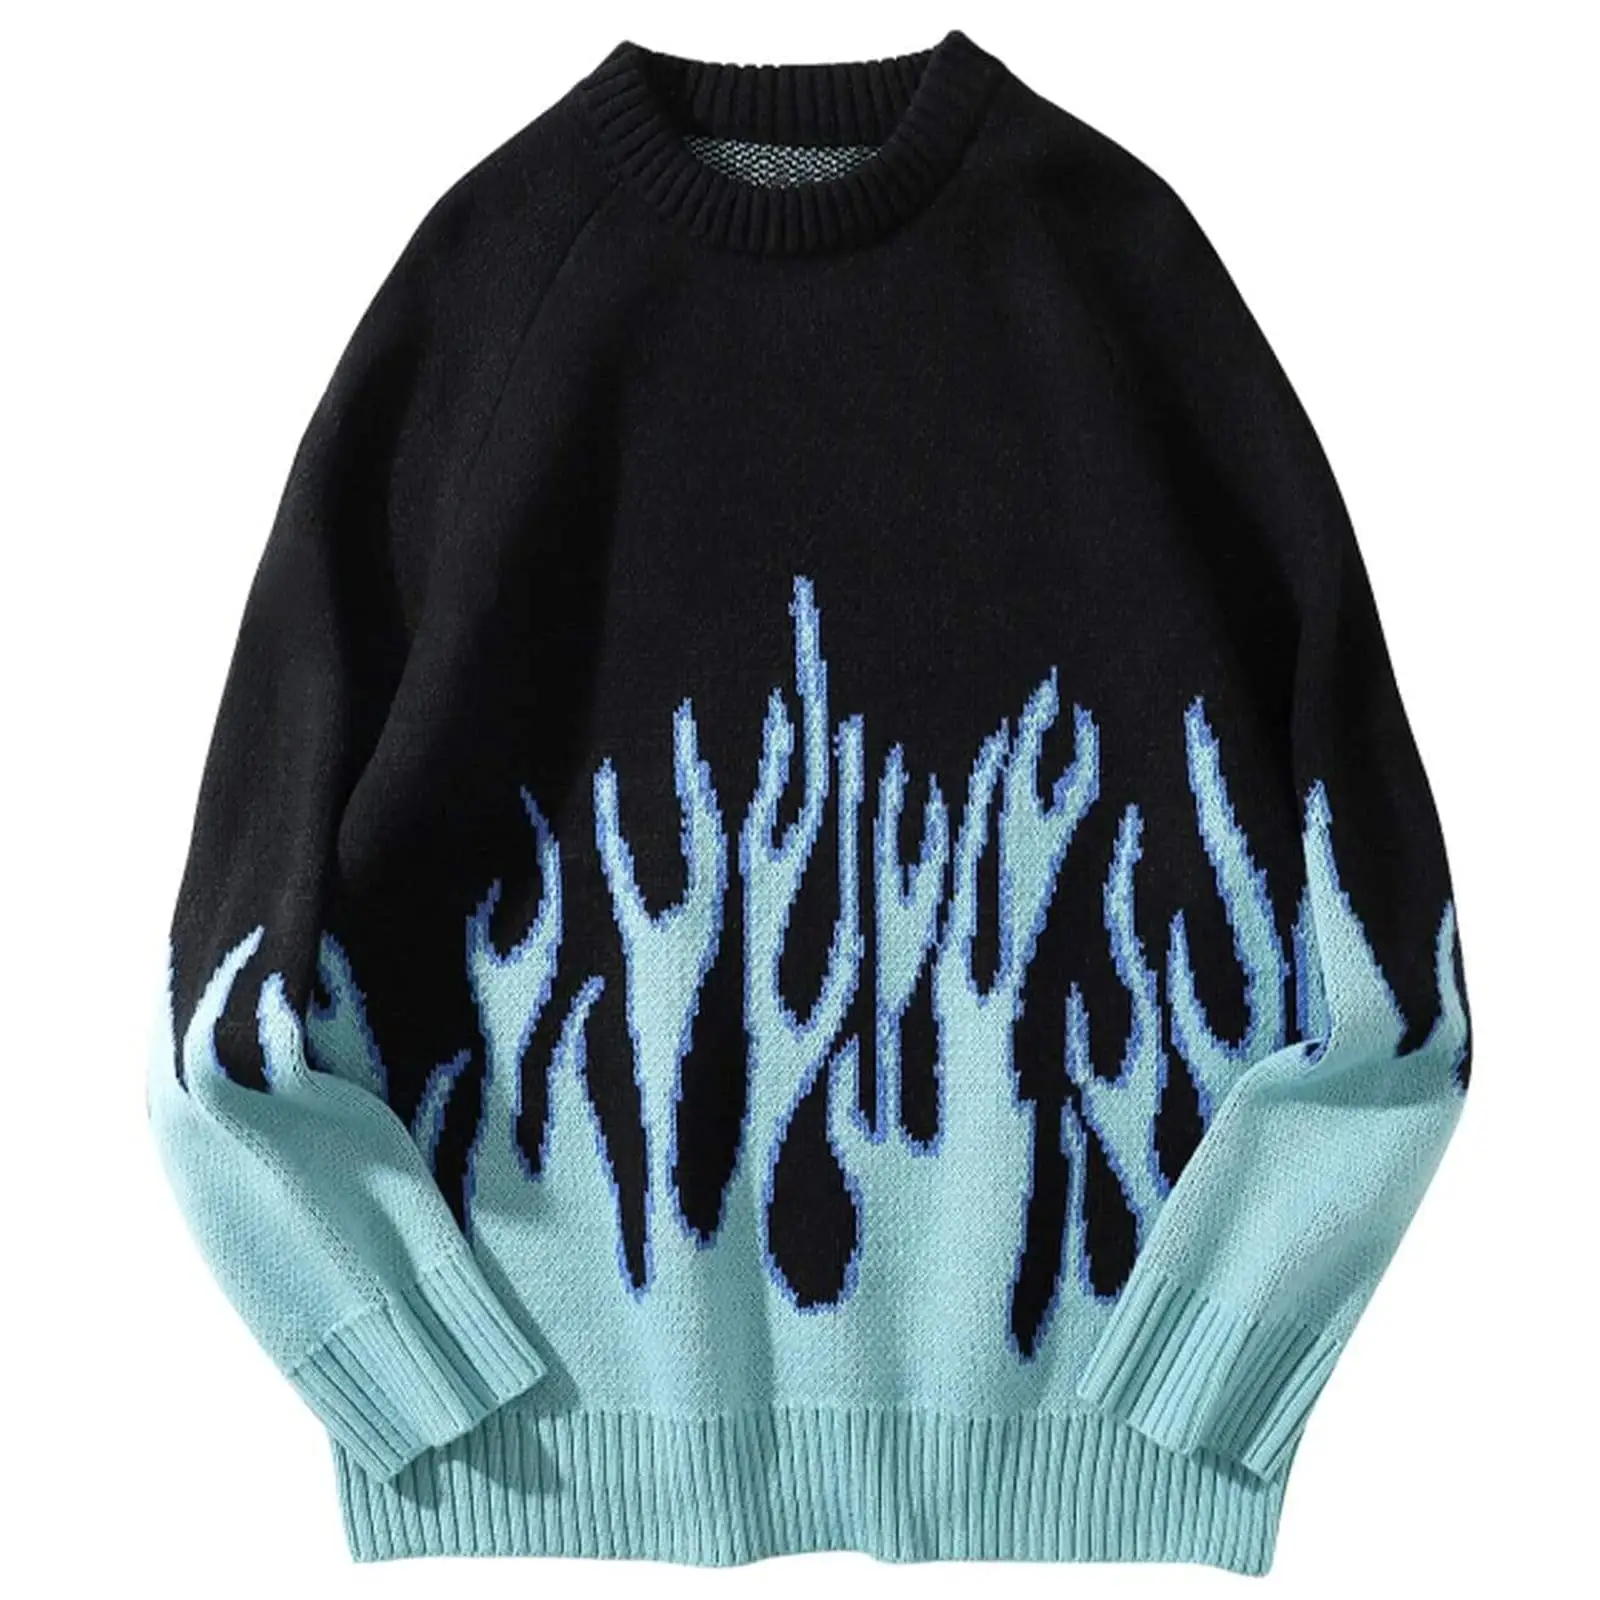 Benutzer definierte Herren bunte Patchwork übergroße Pullover Strick pullover Pullover Unisex Blue Flame Langarm Casual Sweater